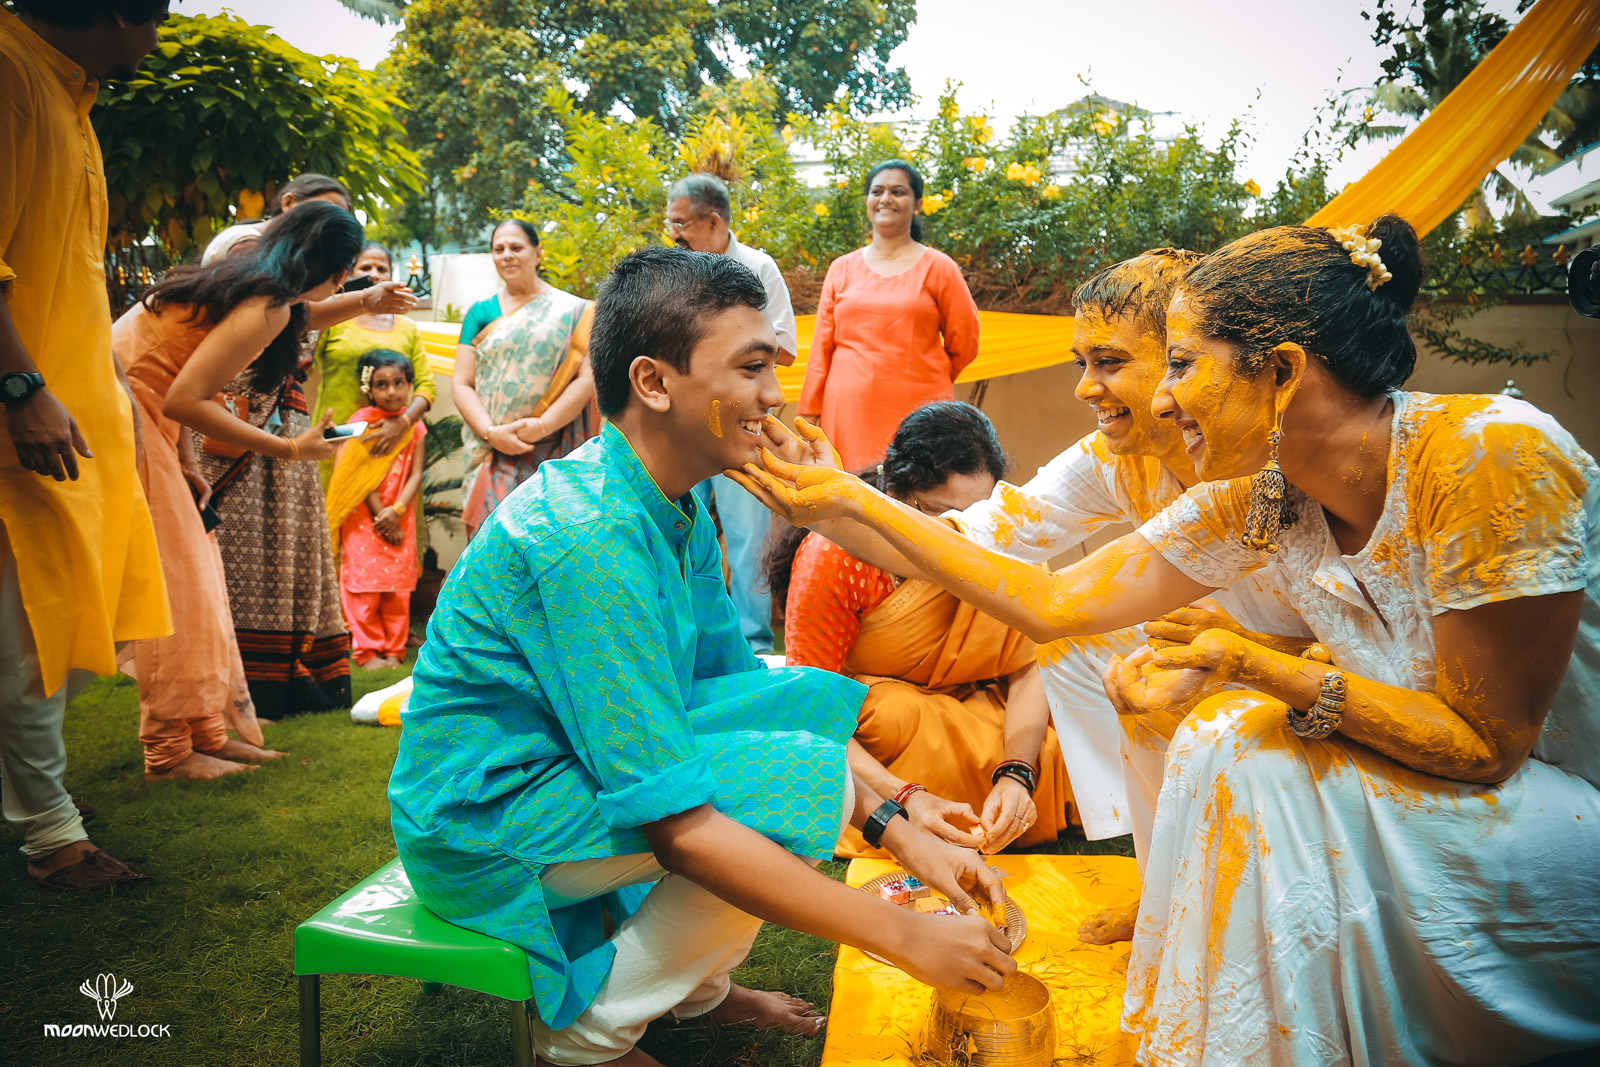 bangalore-wedding-photographers-moonwedlock (12)